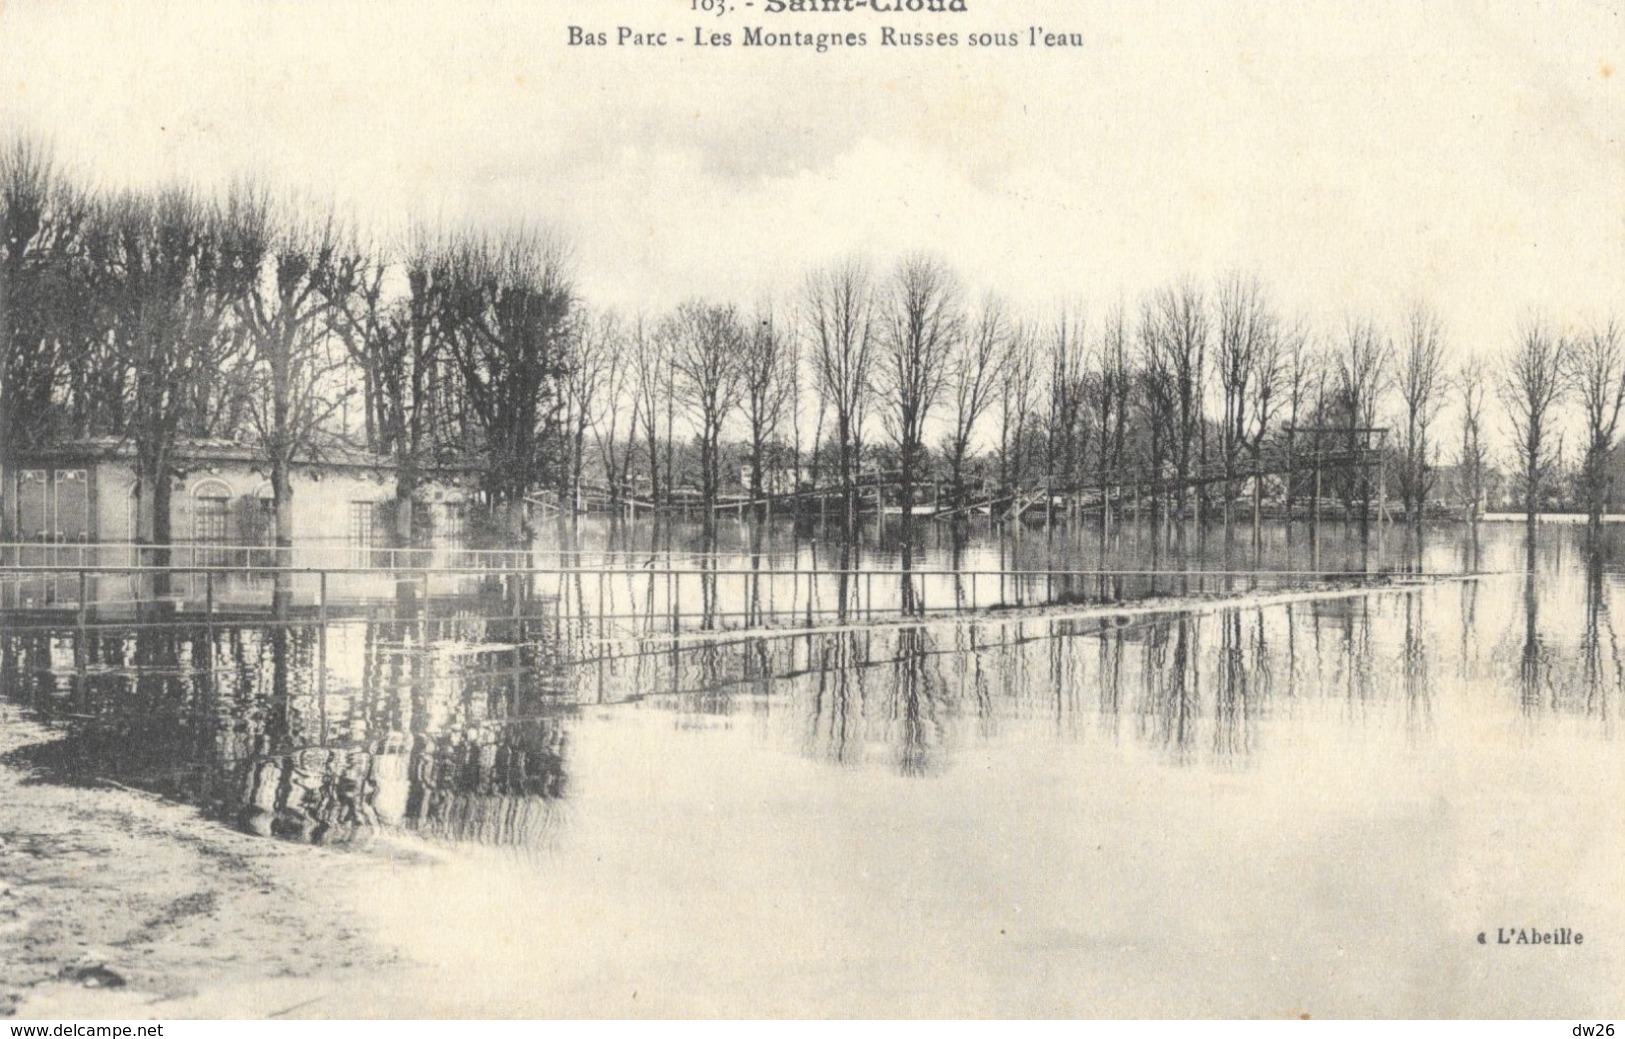 Crues De La Seine 1910 - Saint-Cloud - Bas Parc - Les Montagnes Russes Sous L'eau - Carte L'Abeille N° 103 Non Circulée - Overstromingen